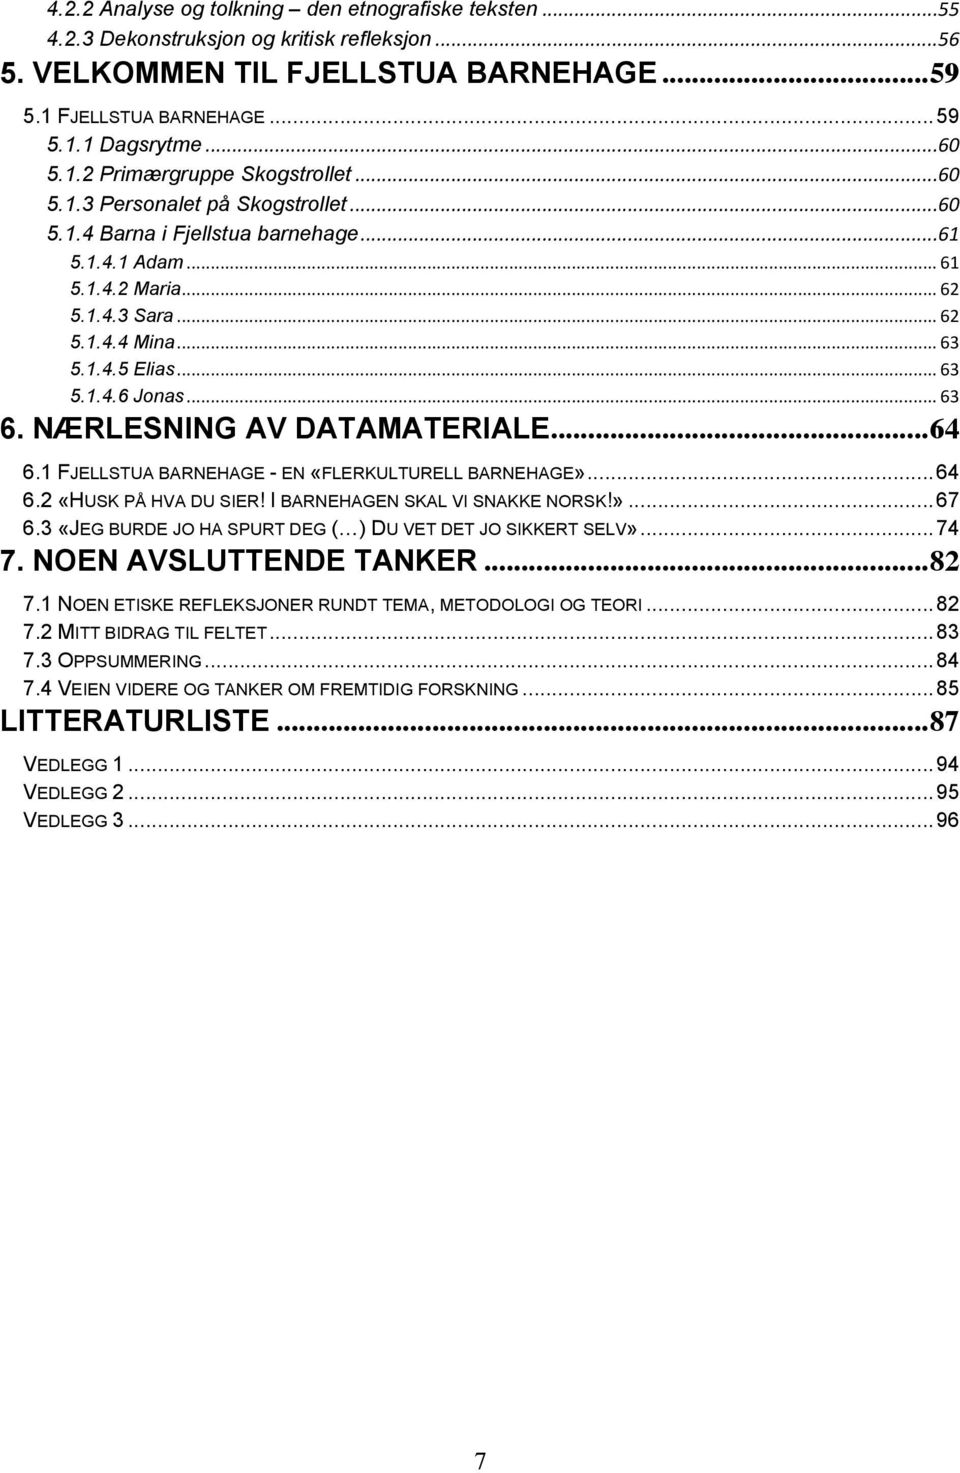 NÆRLESNING AV DATAMATERIALE...64 6.1 FJELLSTUA BARNEHAGE - EN «FLERKULTURELL BARNEHAGE»...64 6.2 «HUSK PÅ HVA DU SIER! I BARNEHAGEN SKAL VI SNAKKE NORSK!»...67 6.